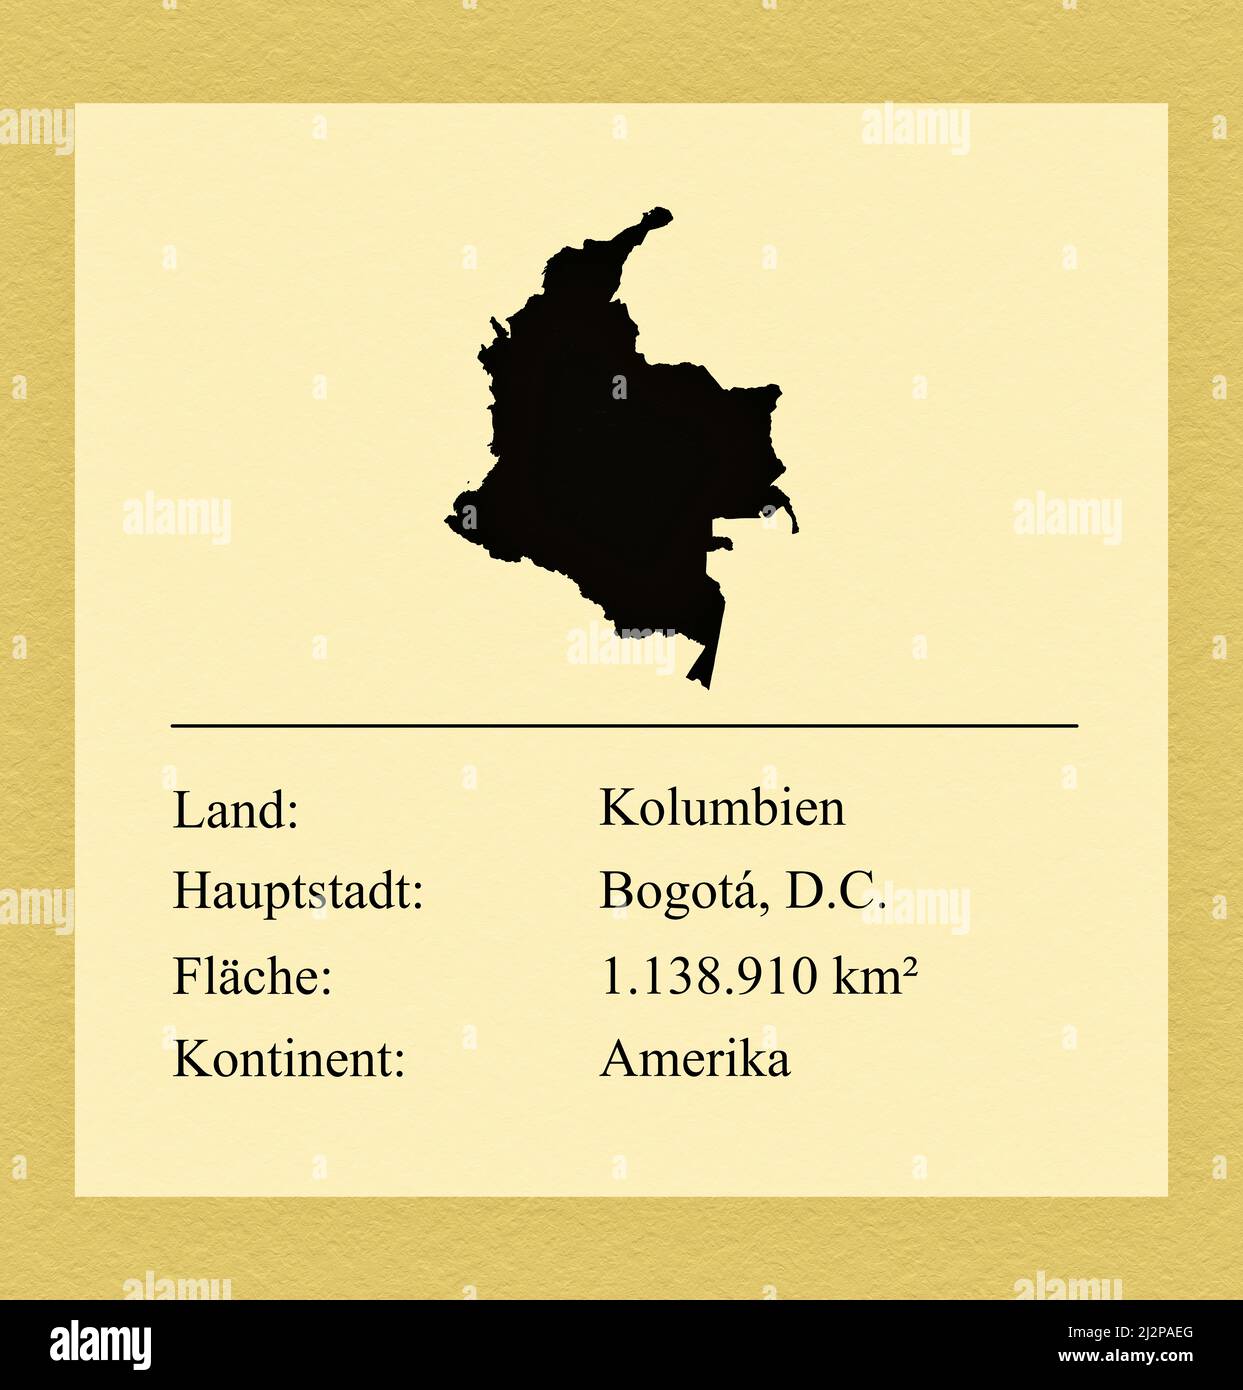 Umrisse des Landes Kolumbien, darunter ein kleiner Steckbrief mit Ländernamen, Hauptstadt, Fläche und Kontinent Foto de stock